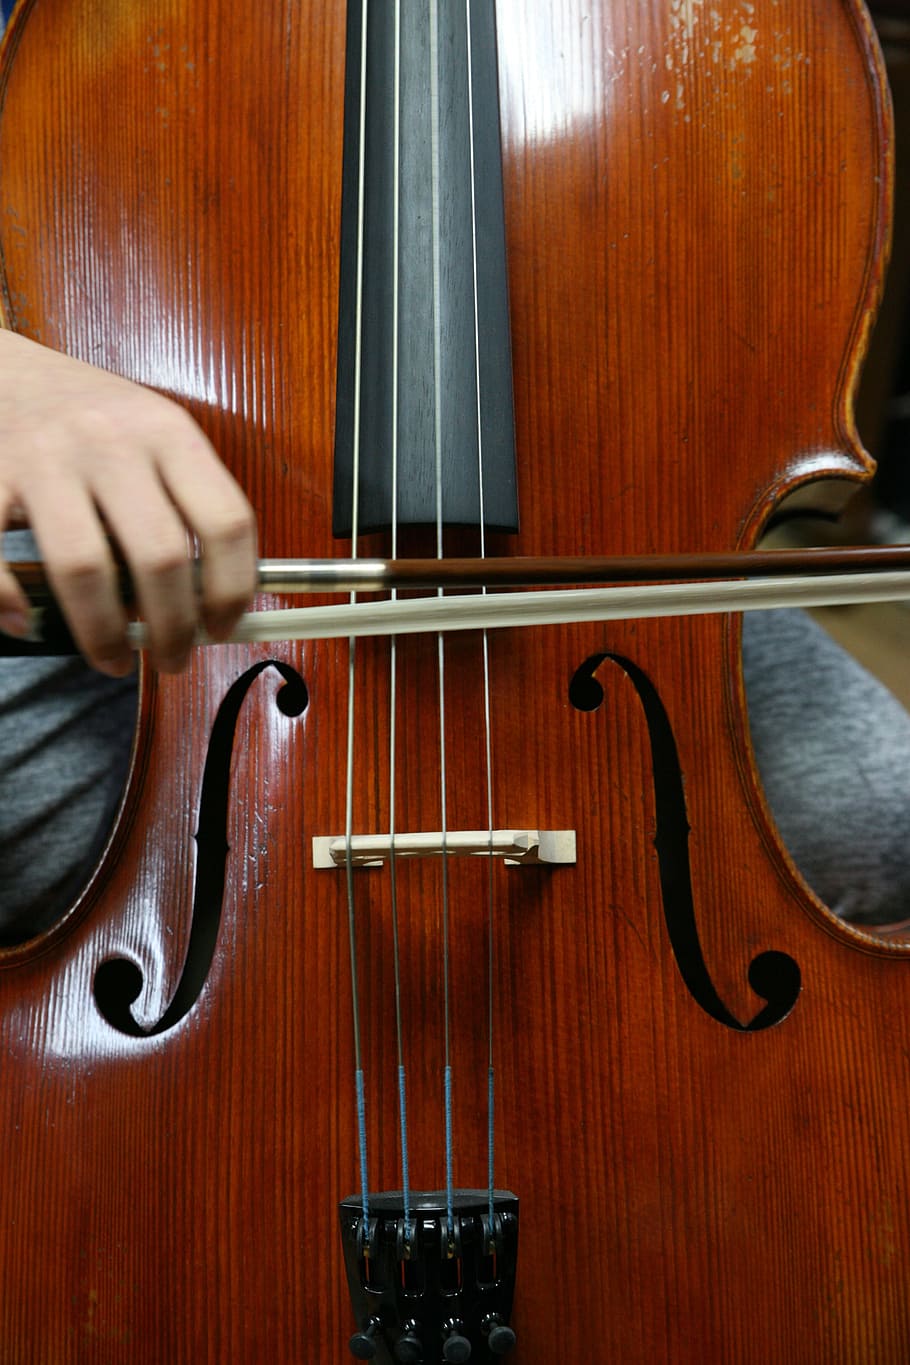 biola, kayu, klasik, musik, musik klasik, cello, dimainkan, instrumen, konser, pertunjukan